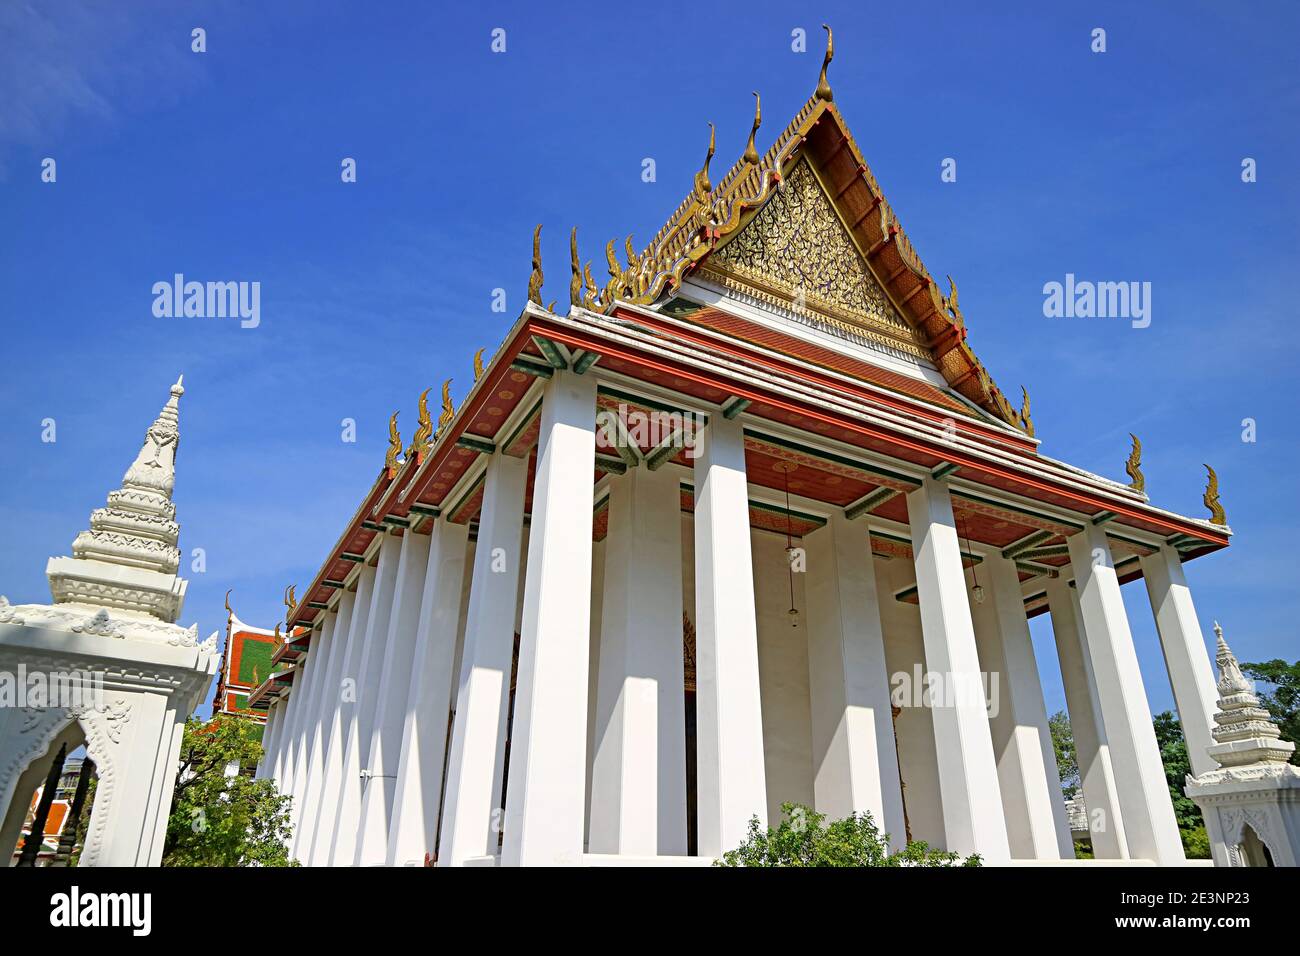 Impresionante fachada del Salón Ordinario del Templo Wat Ratchanatdaram situado en la Isla Rattanakosin de Bangkok, Tailandia Foto de stock